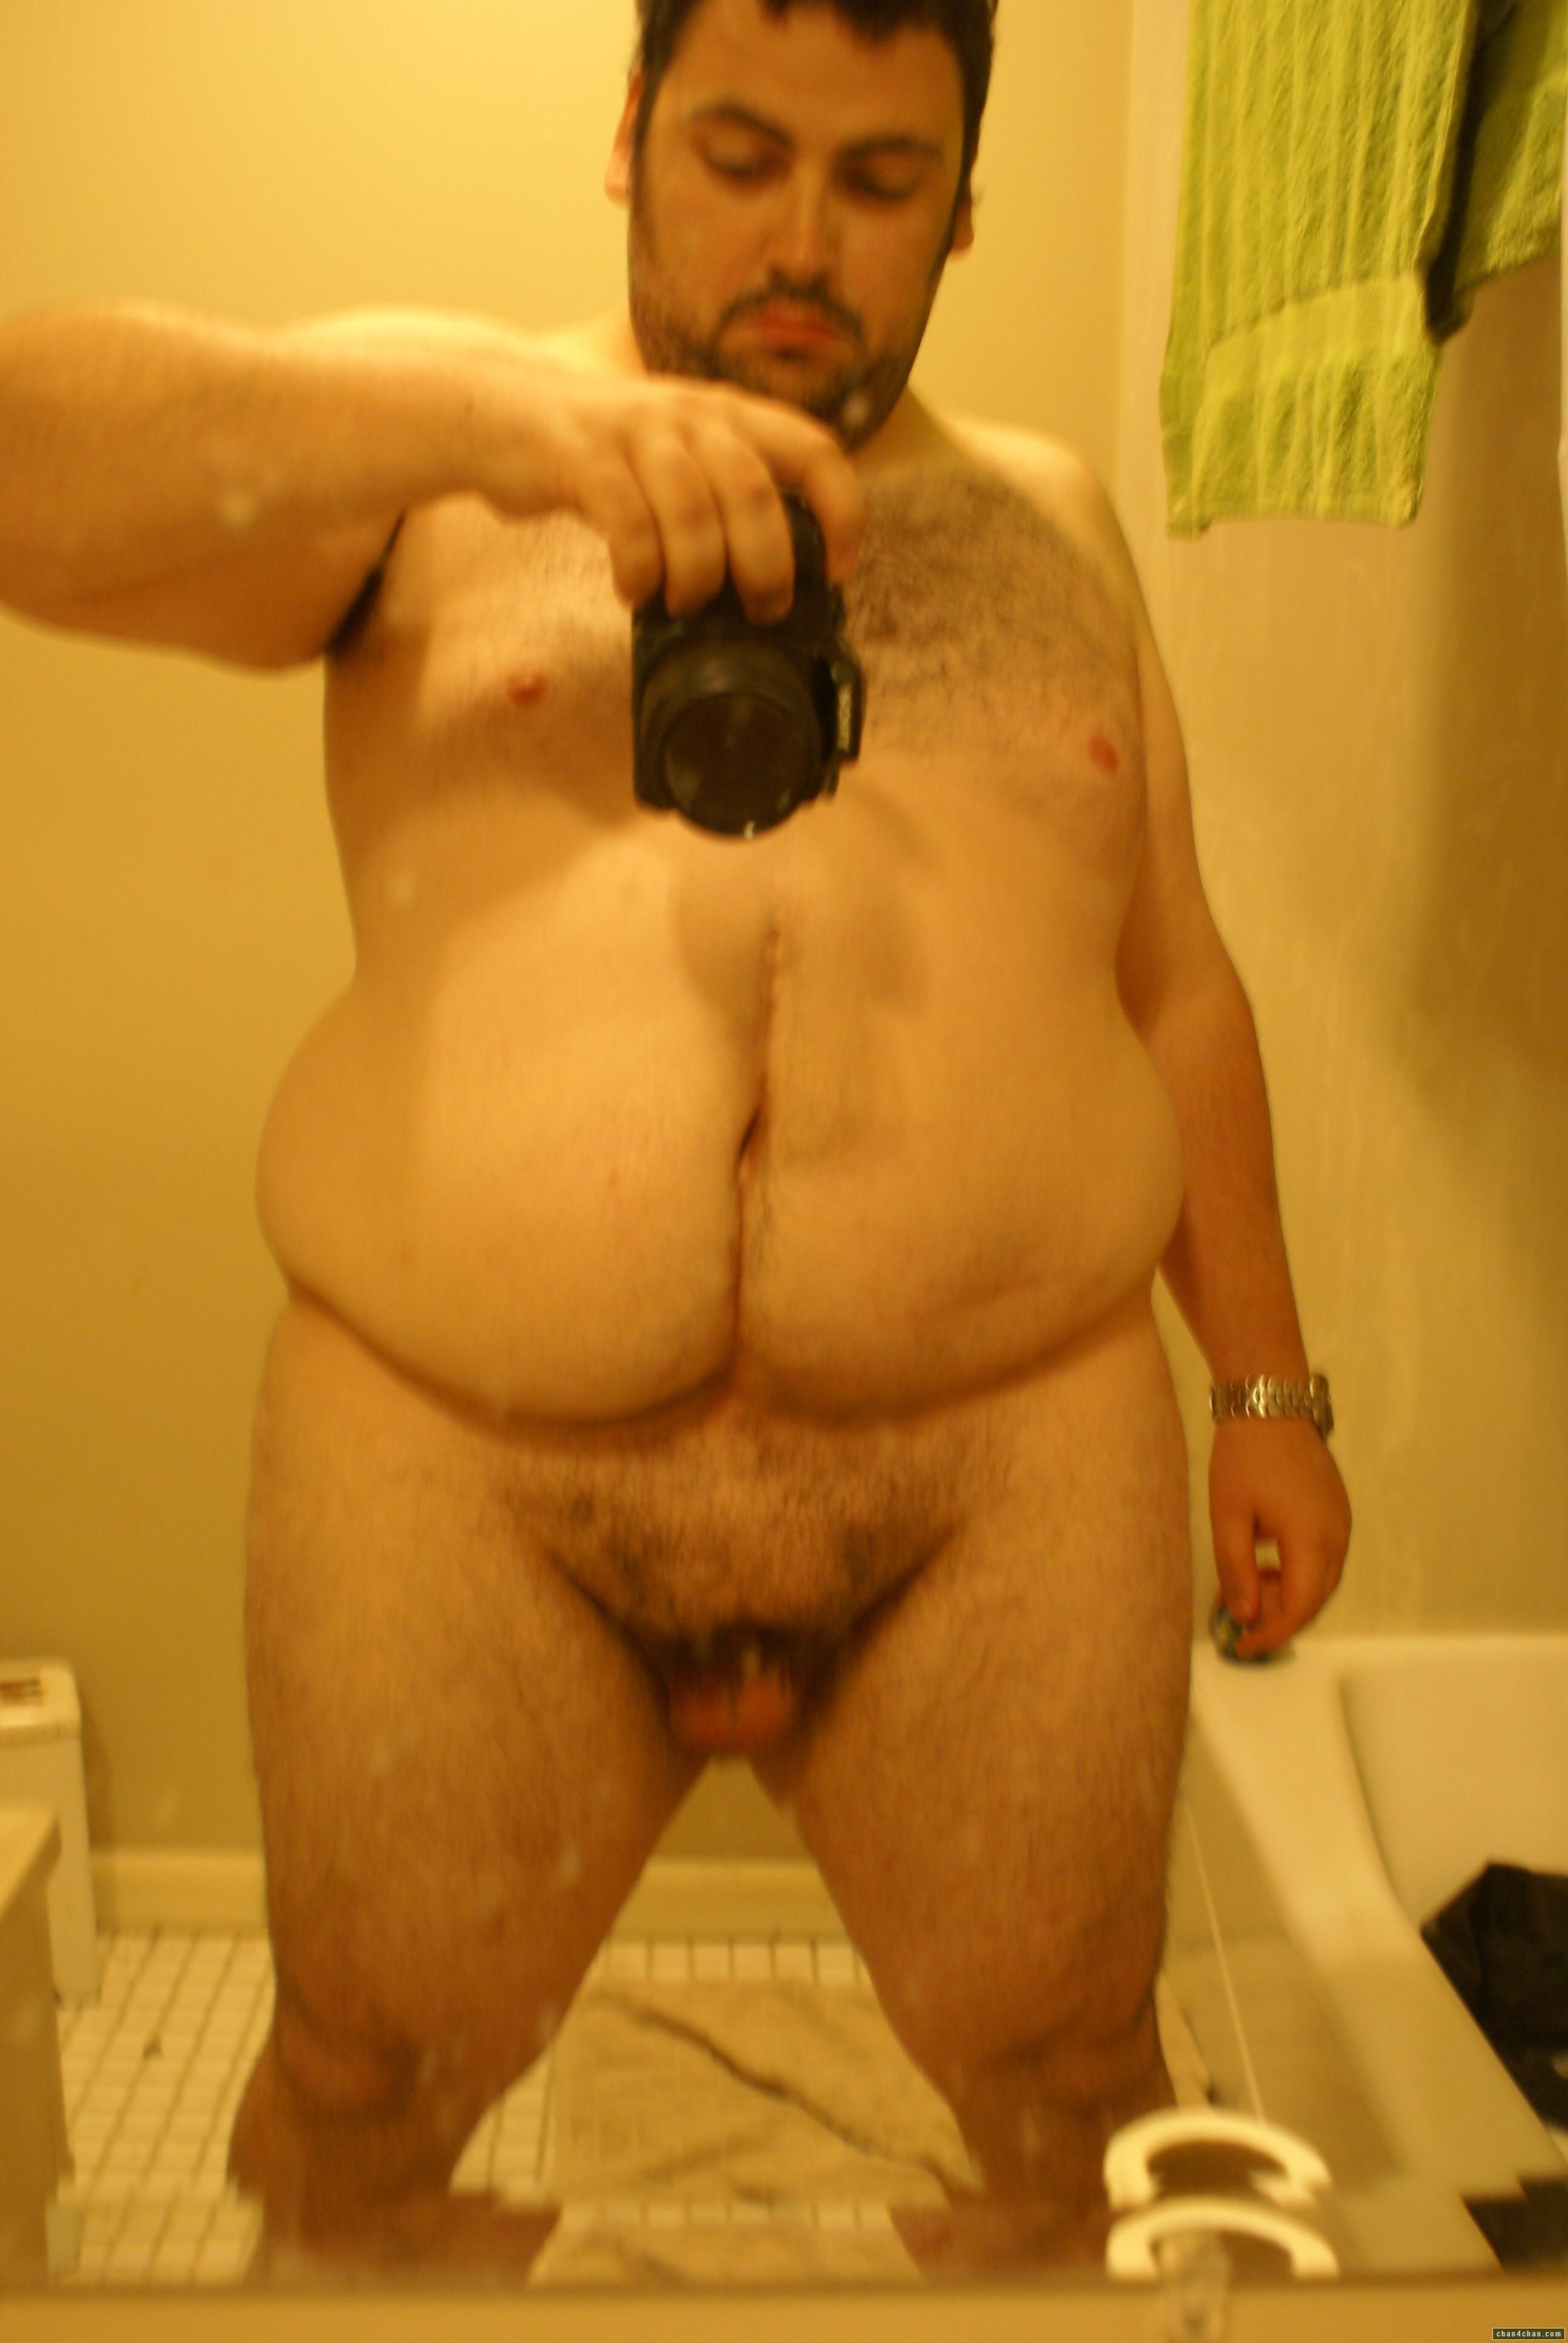 Fat guy small penis - 🧡 Small fat dicks - Admos.eu.